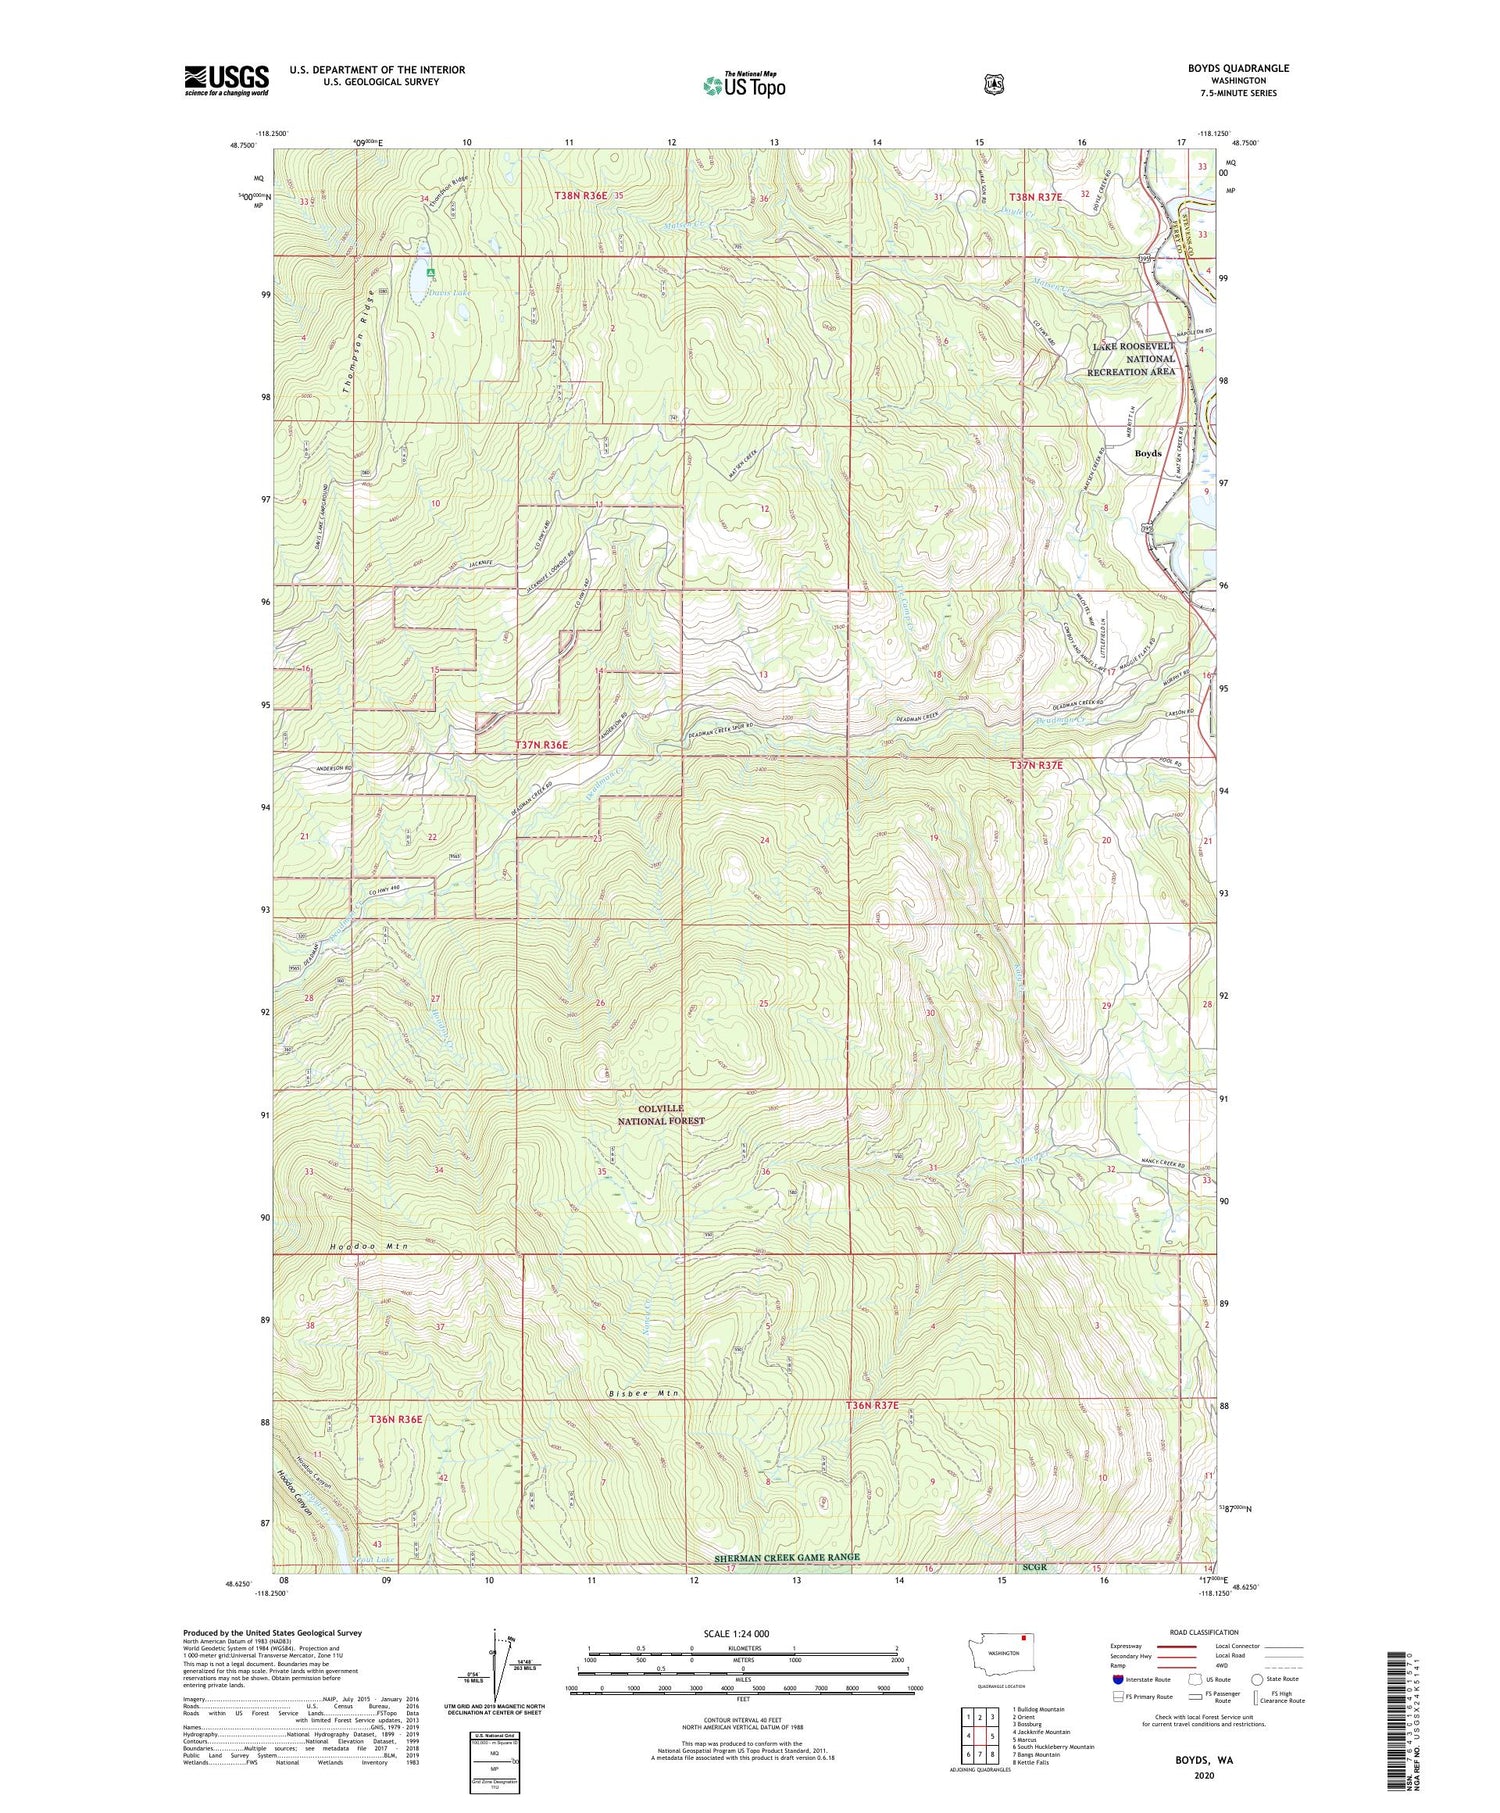 Boyds Washington US Topo Map Image